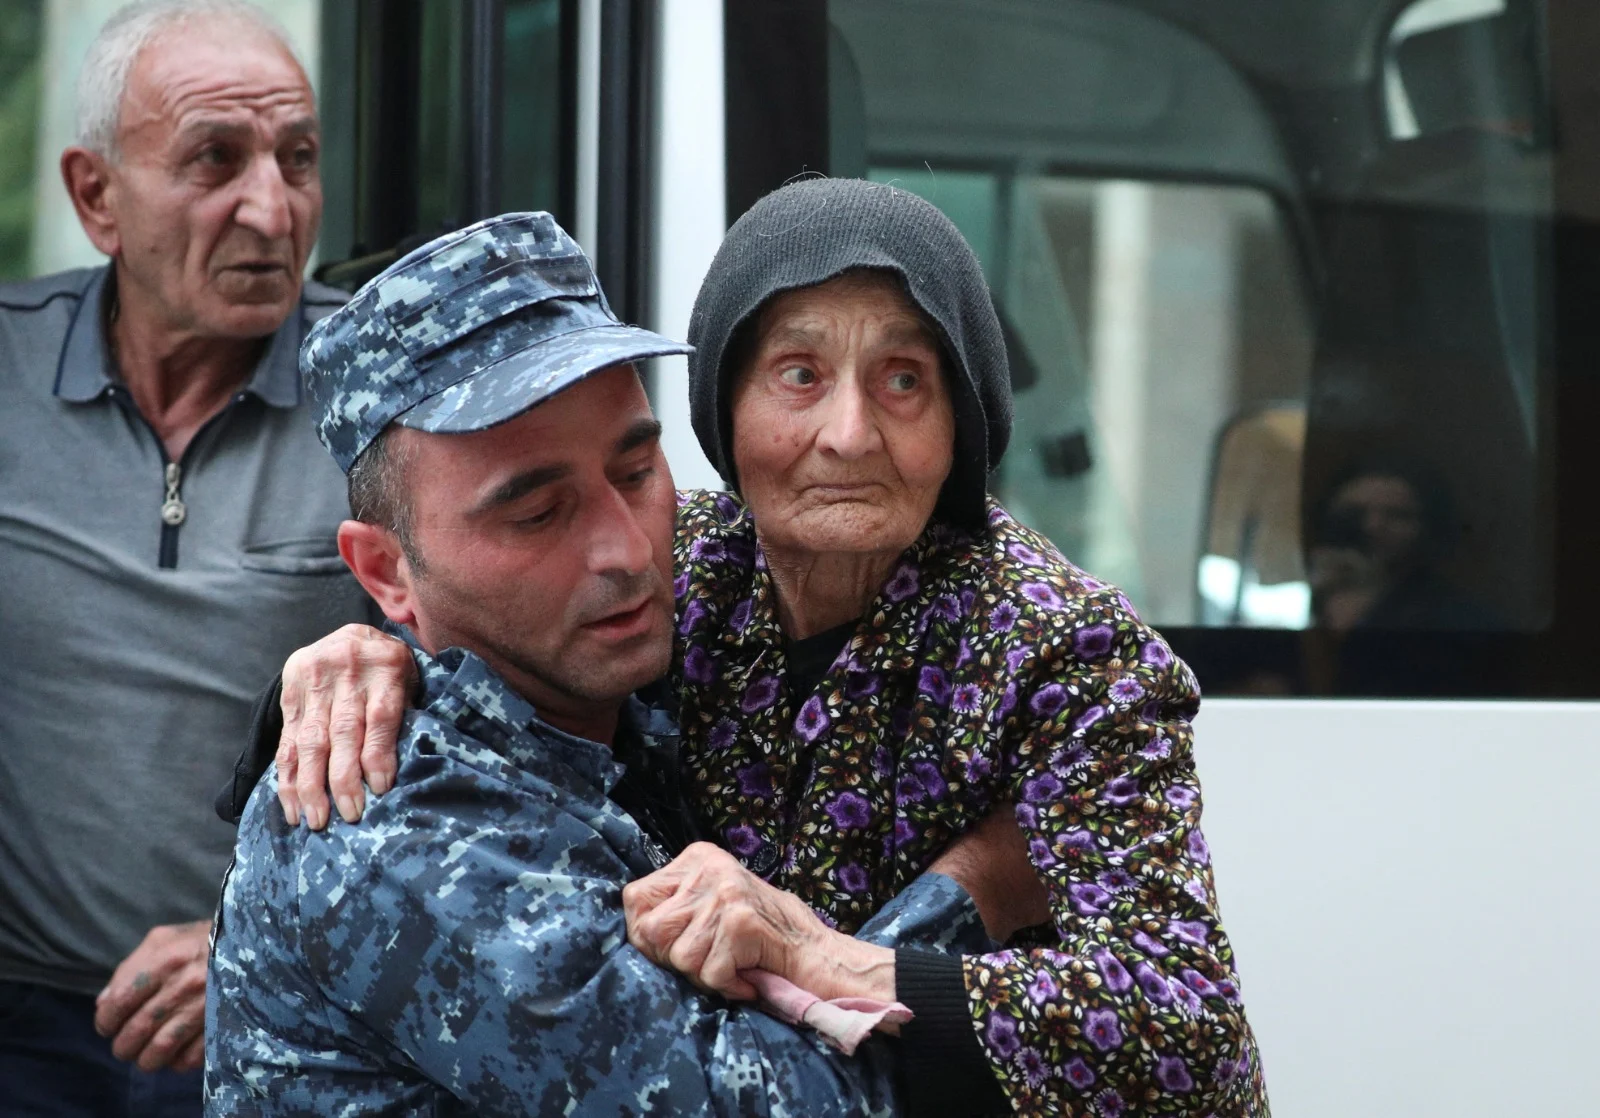 פליטה ארמנית מגיעה למחסום צבאי בקונידזור, ארמניה